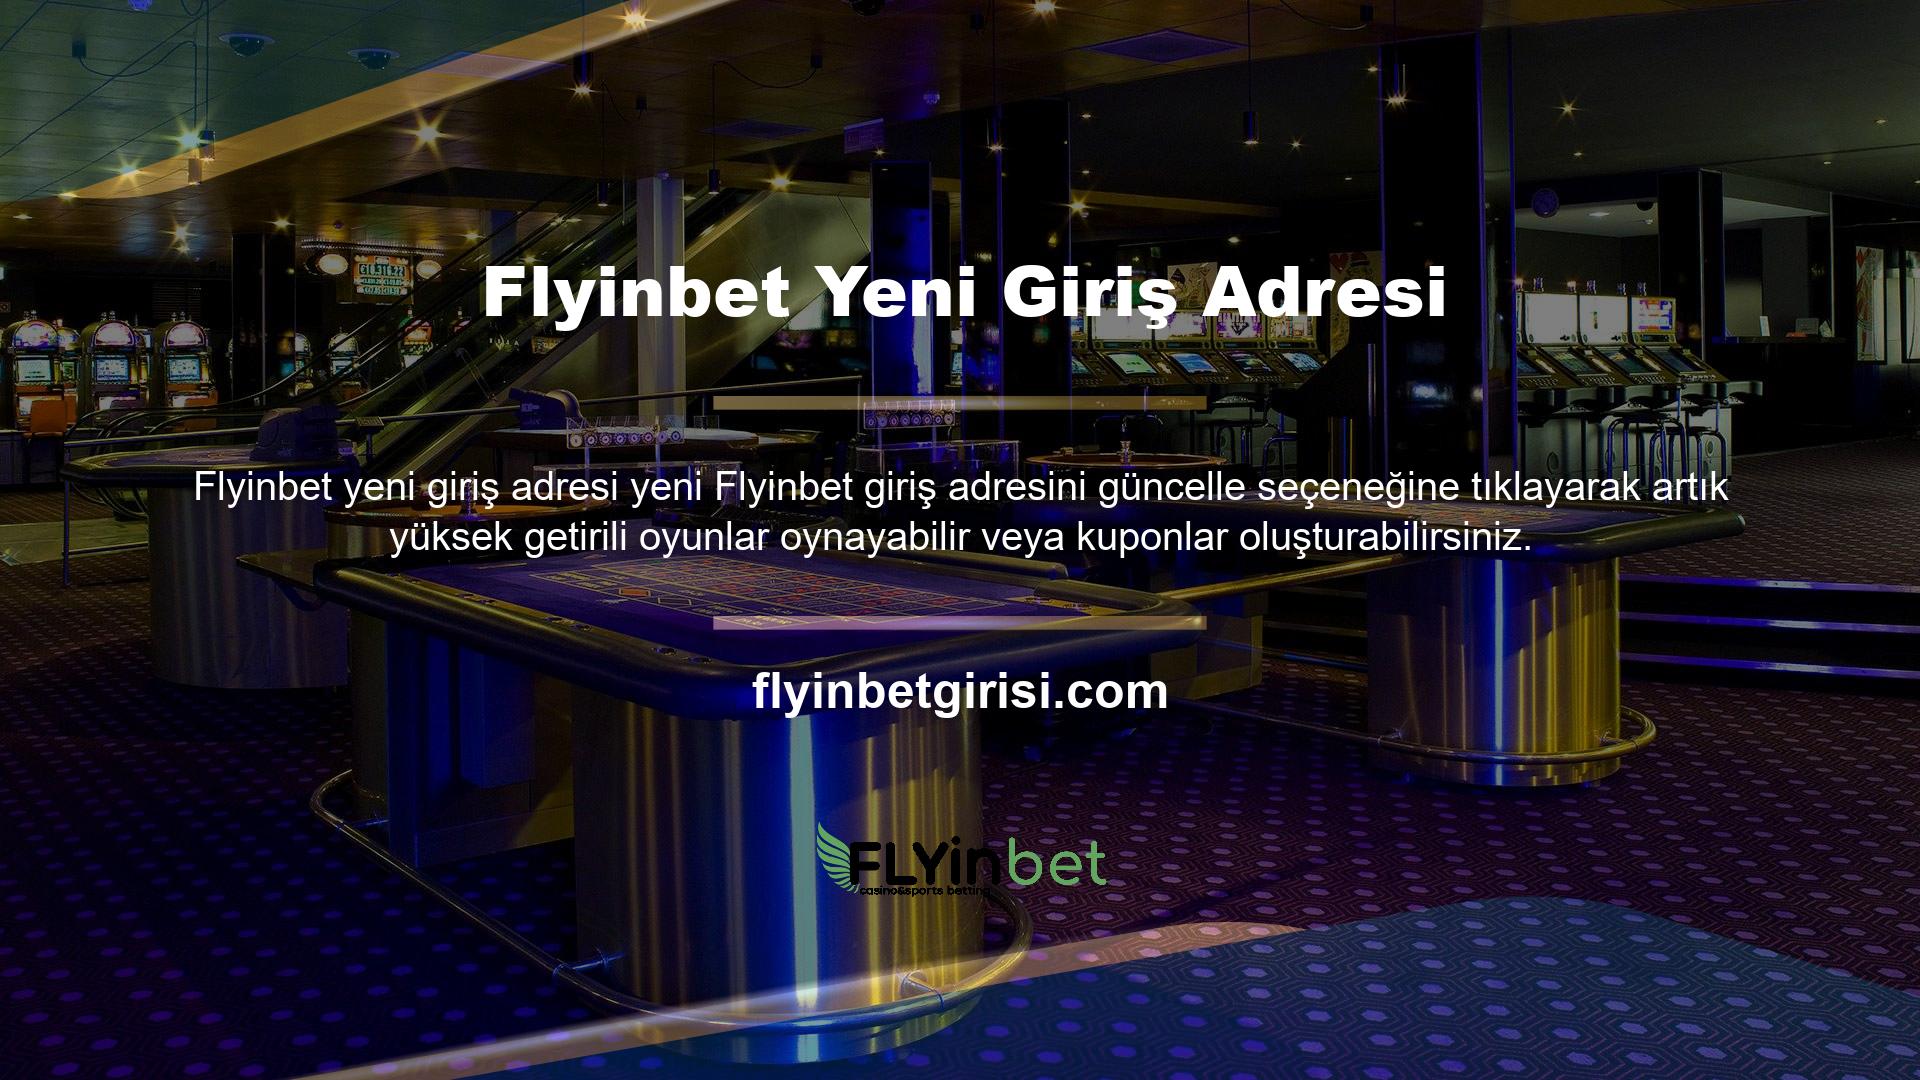 Çevrimiçi casino siteleri, Flyinbet açıkça görülen yüksek üye memnuniyetiyle tanınır